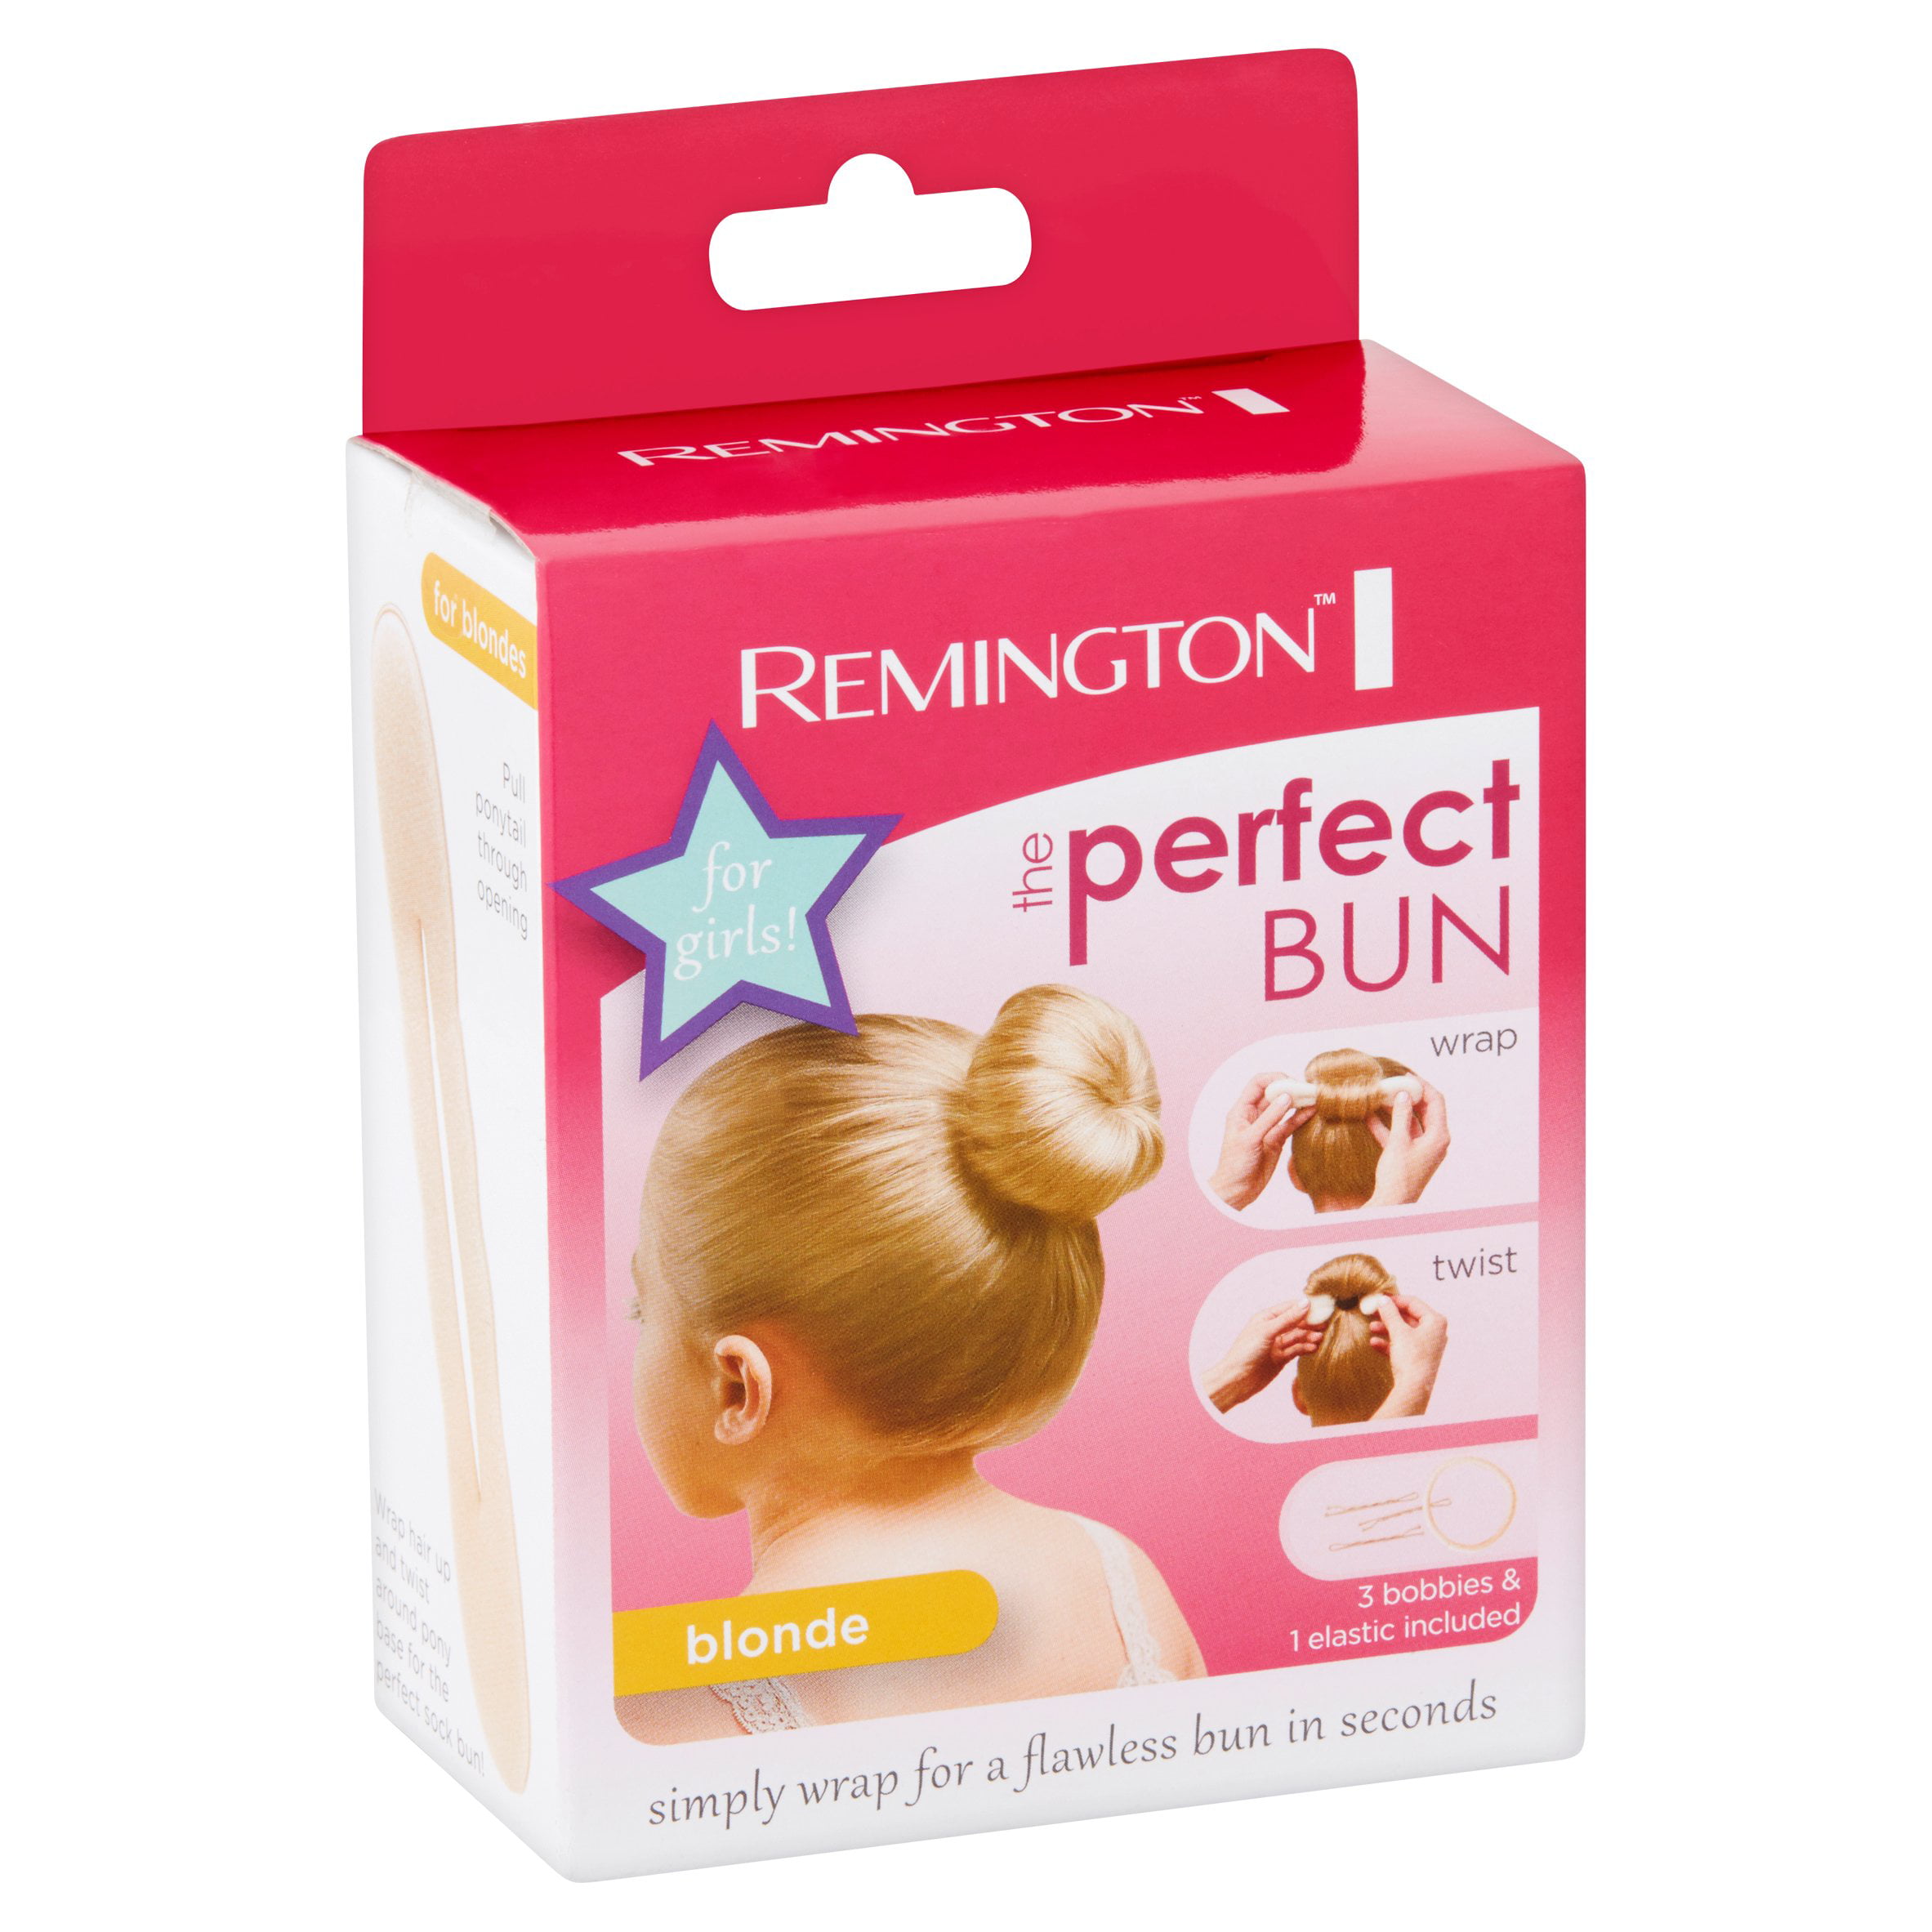 Remington the Perfect Bun for Girls Blonde Bun Tool 